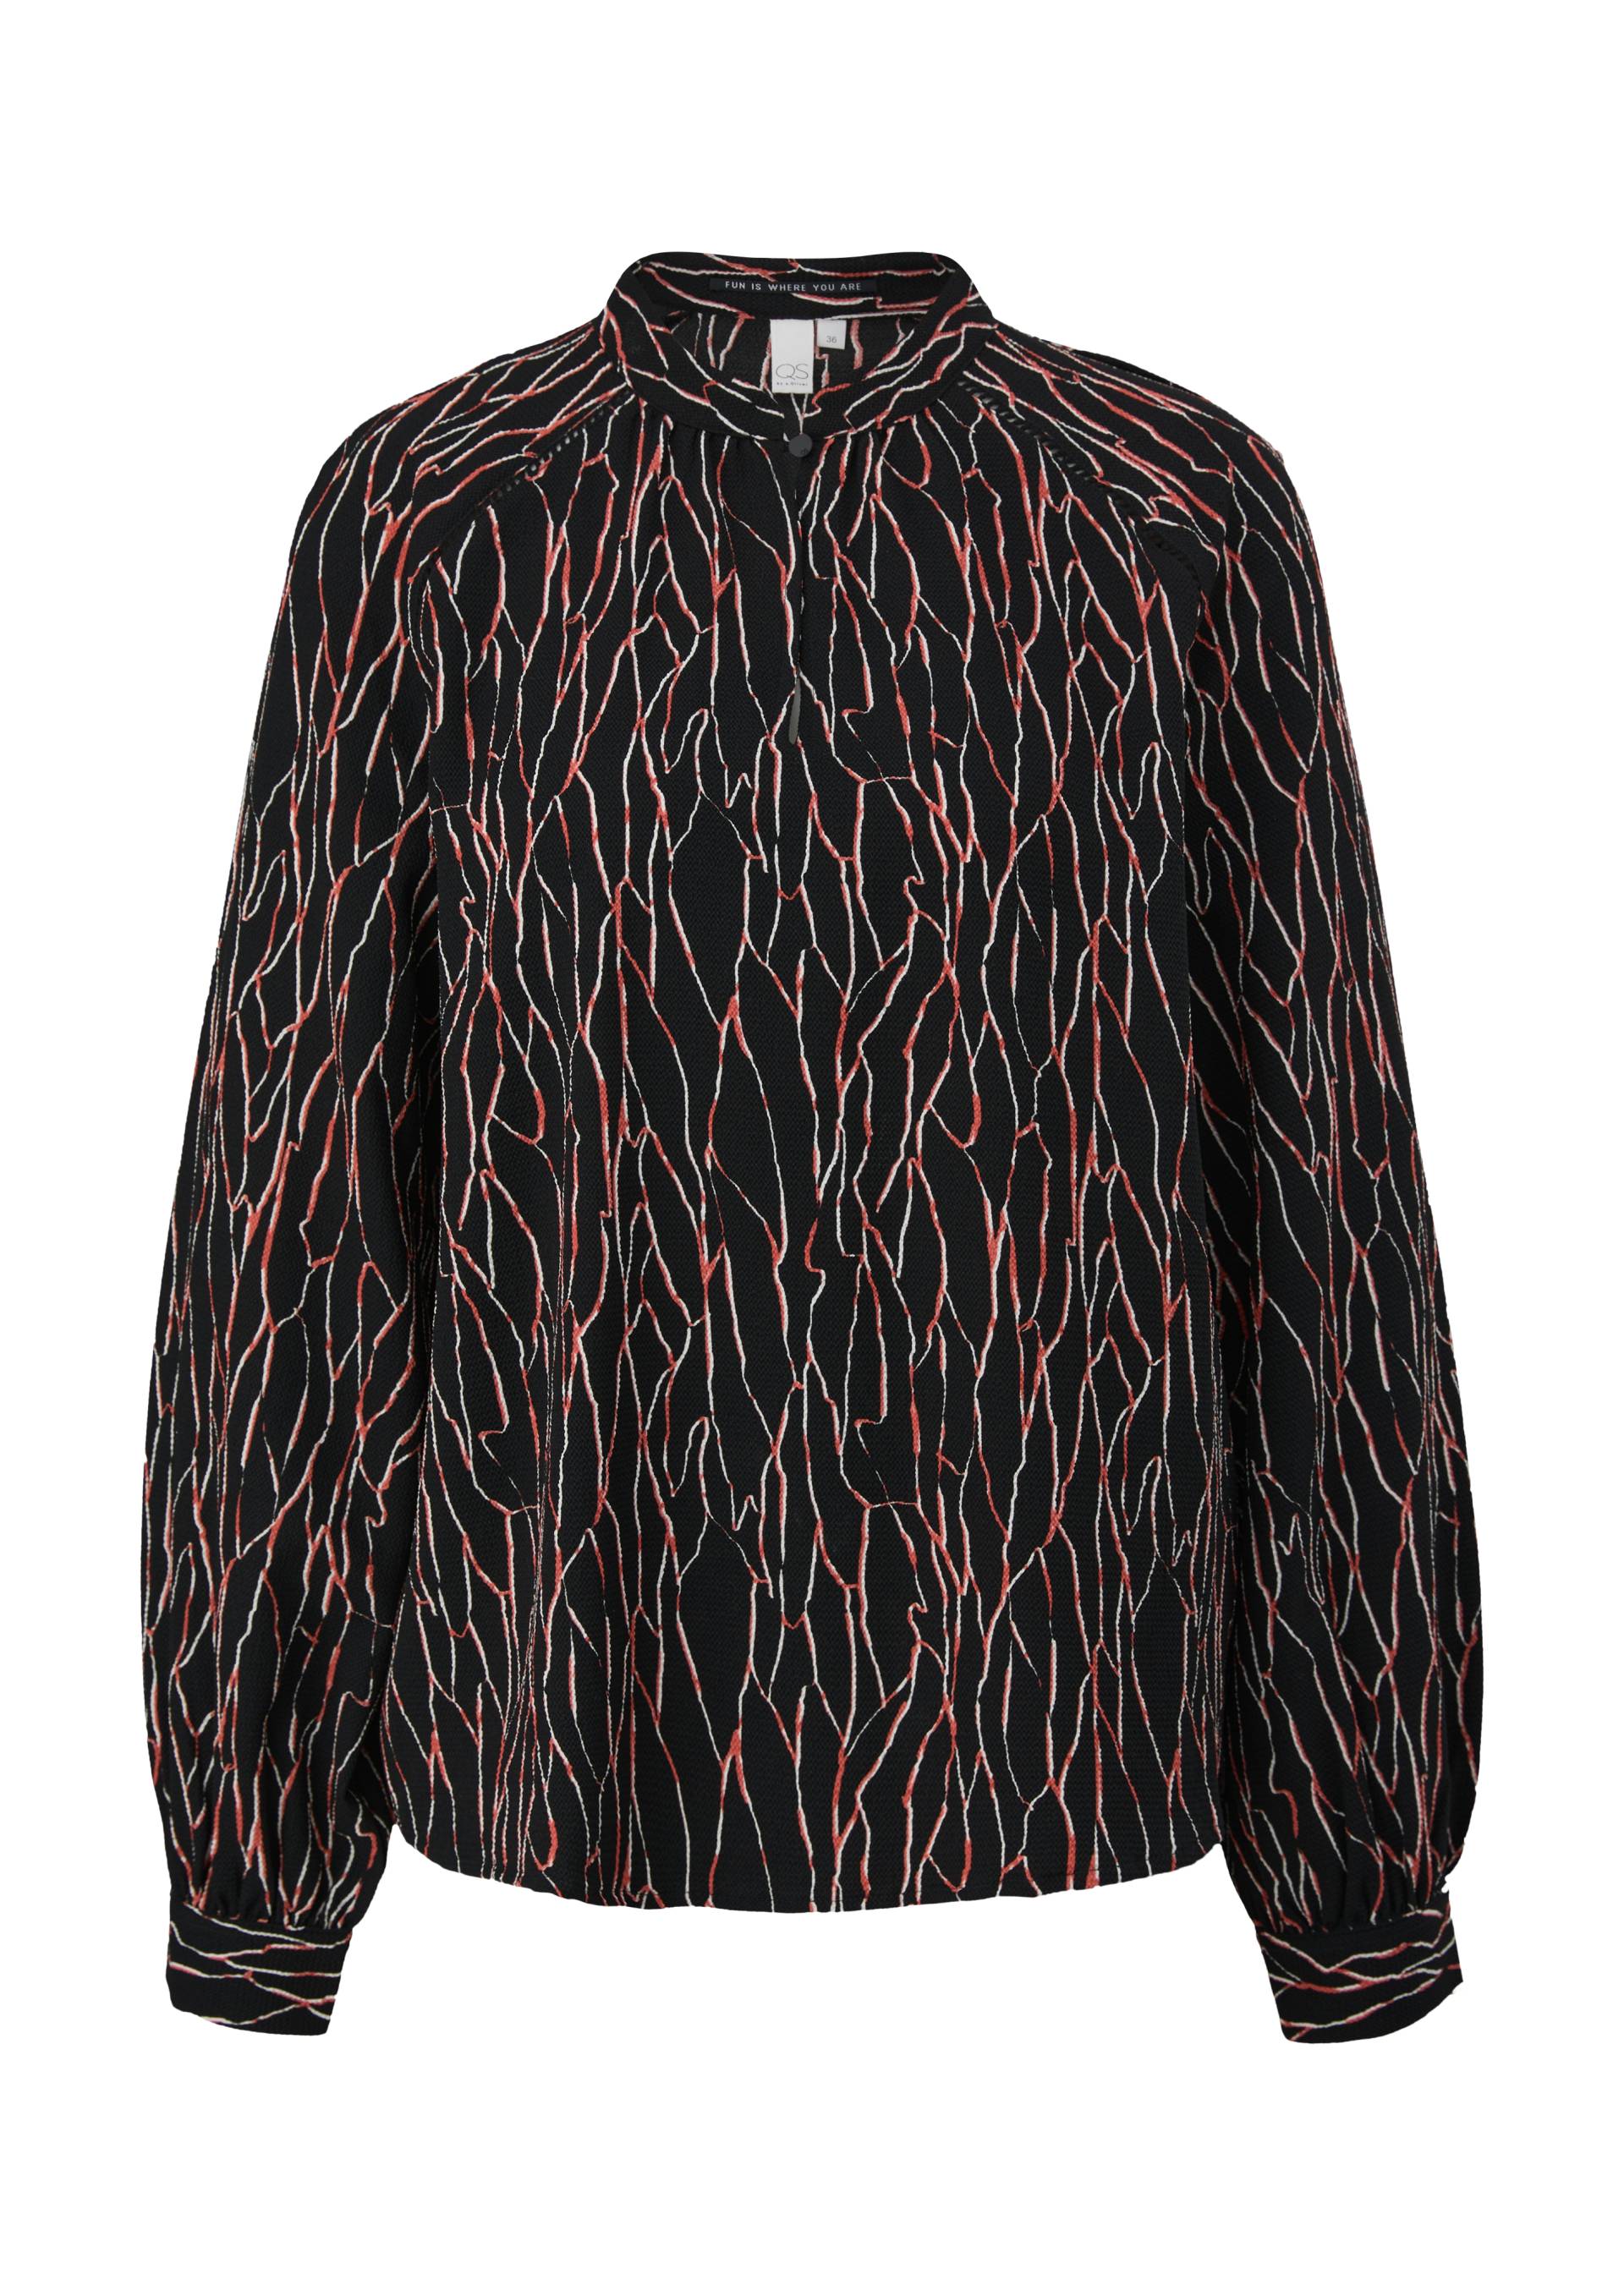 QS - Bluse mit abstraktem Muster, Damen, schwarz von QS